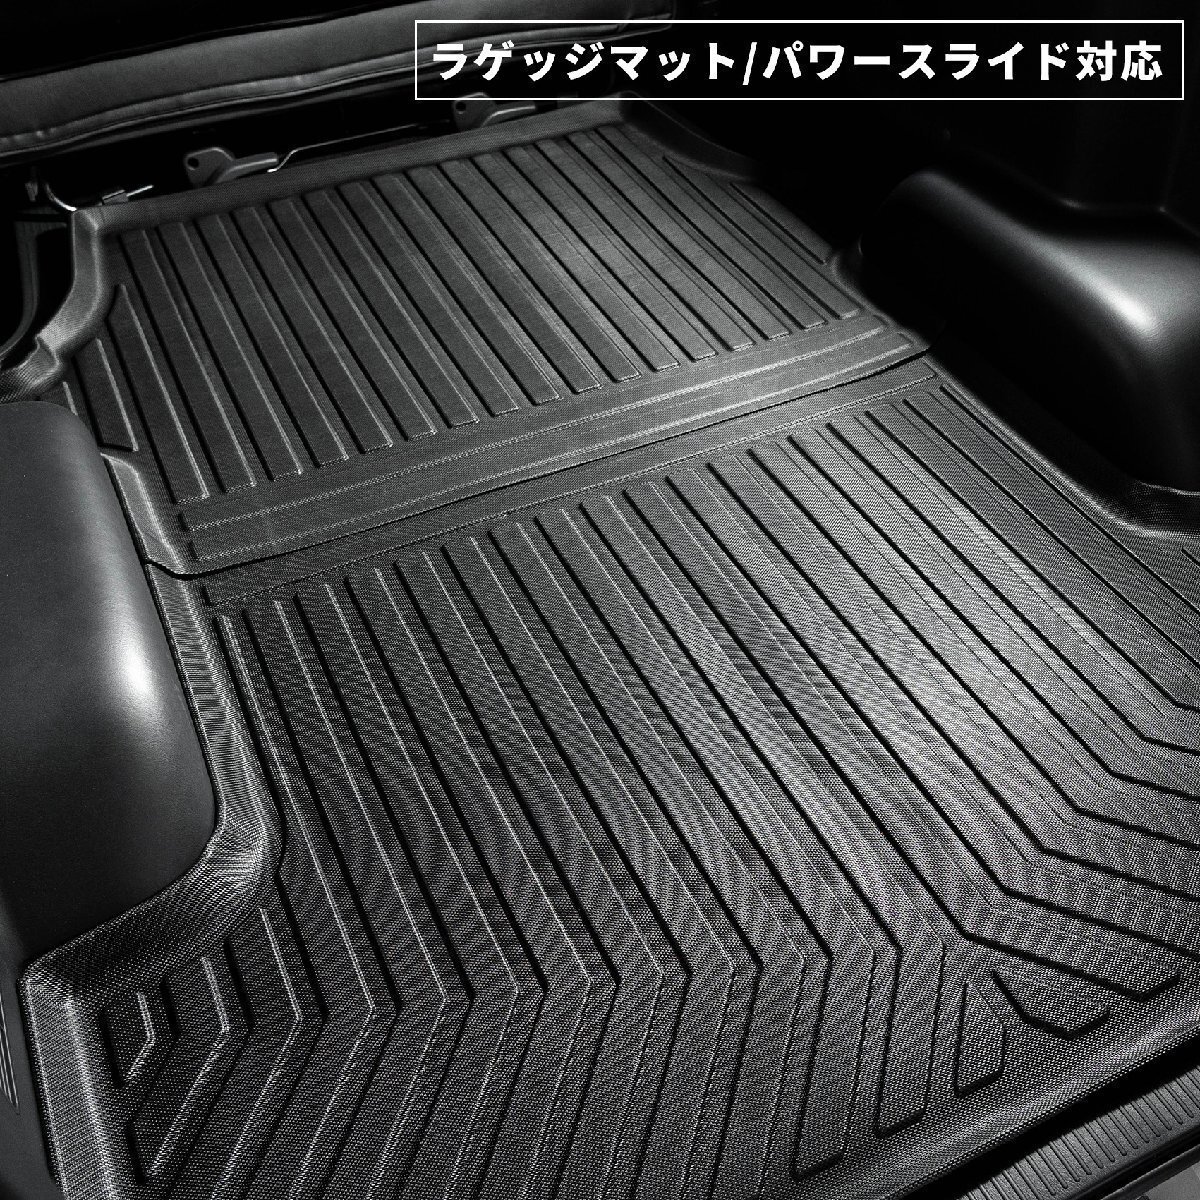  ограниченное количество \\1 старт 200 серия Hiace S-GL narrow 3D коврик на пол ( передний * Second )& багажный коврик комплект ( автоматическая раздвижная дверь для )